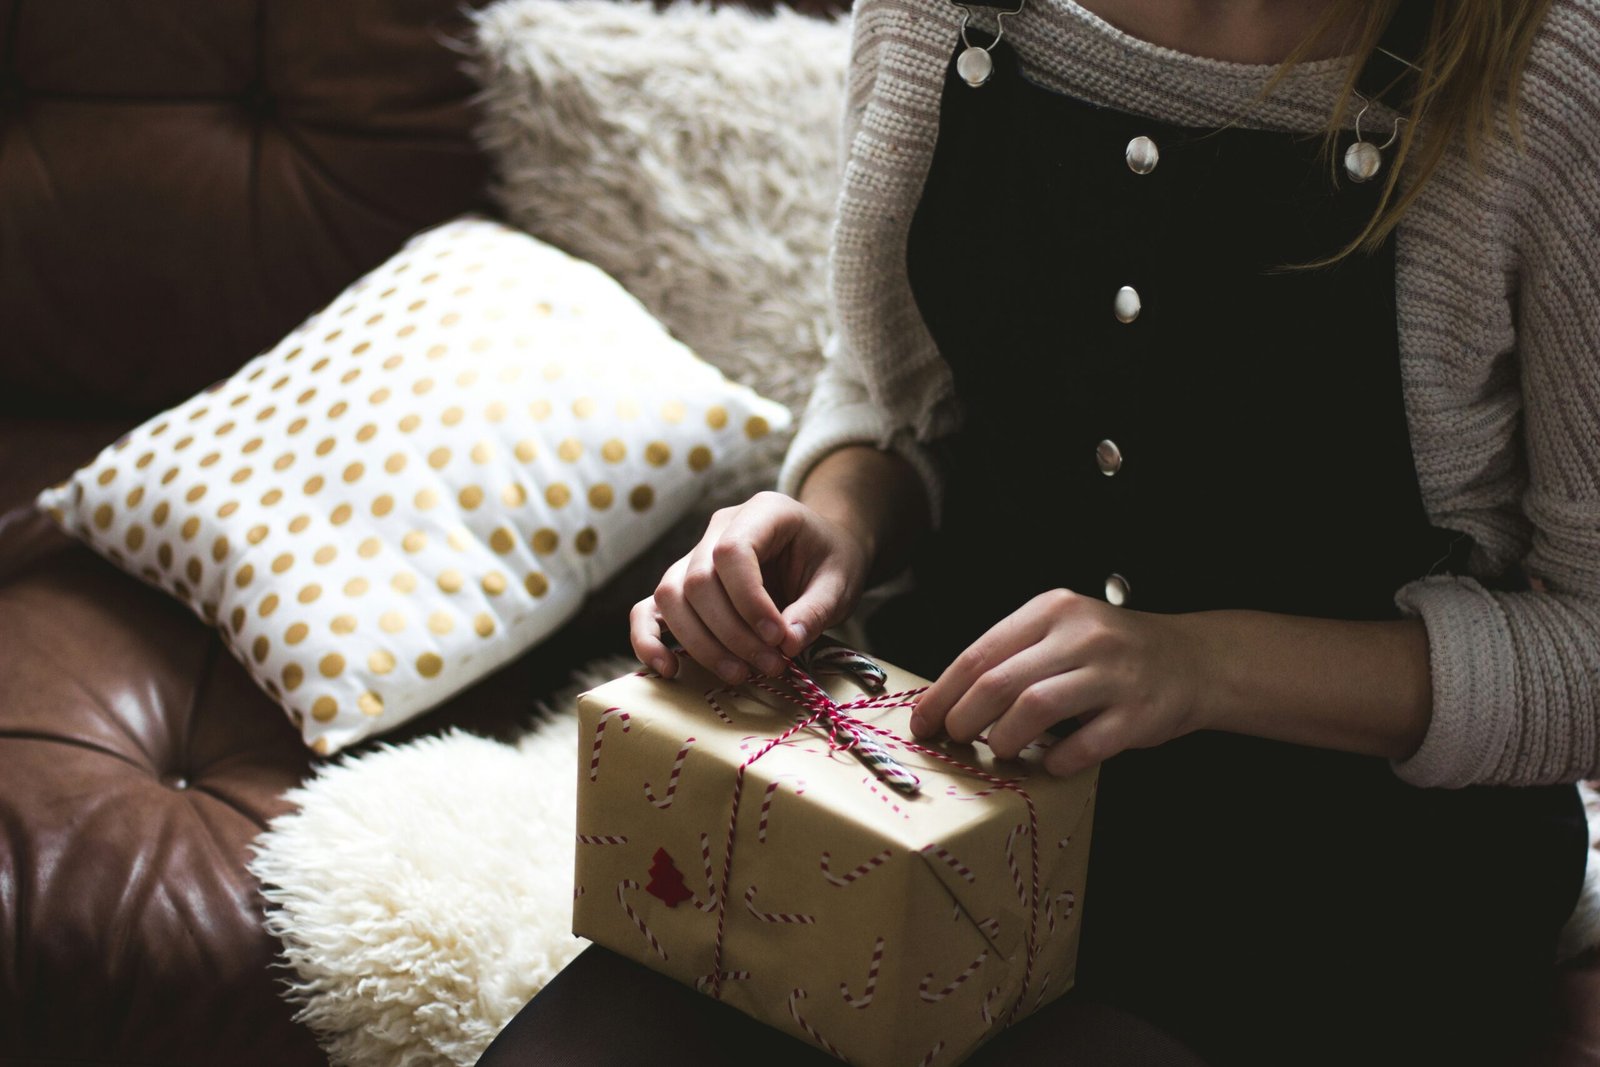 Entdecken Sie Last-Minute-Geschenkideen für jeden Anlass und machen Sie jemandem eine Freude mit einem durchdachten und einzigartigen Geschenk.